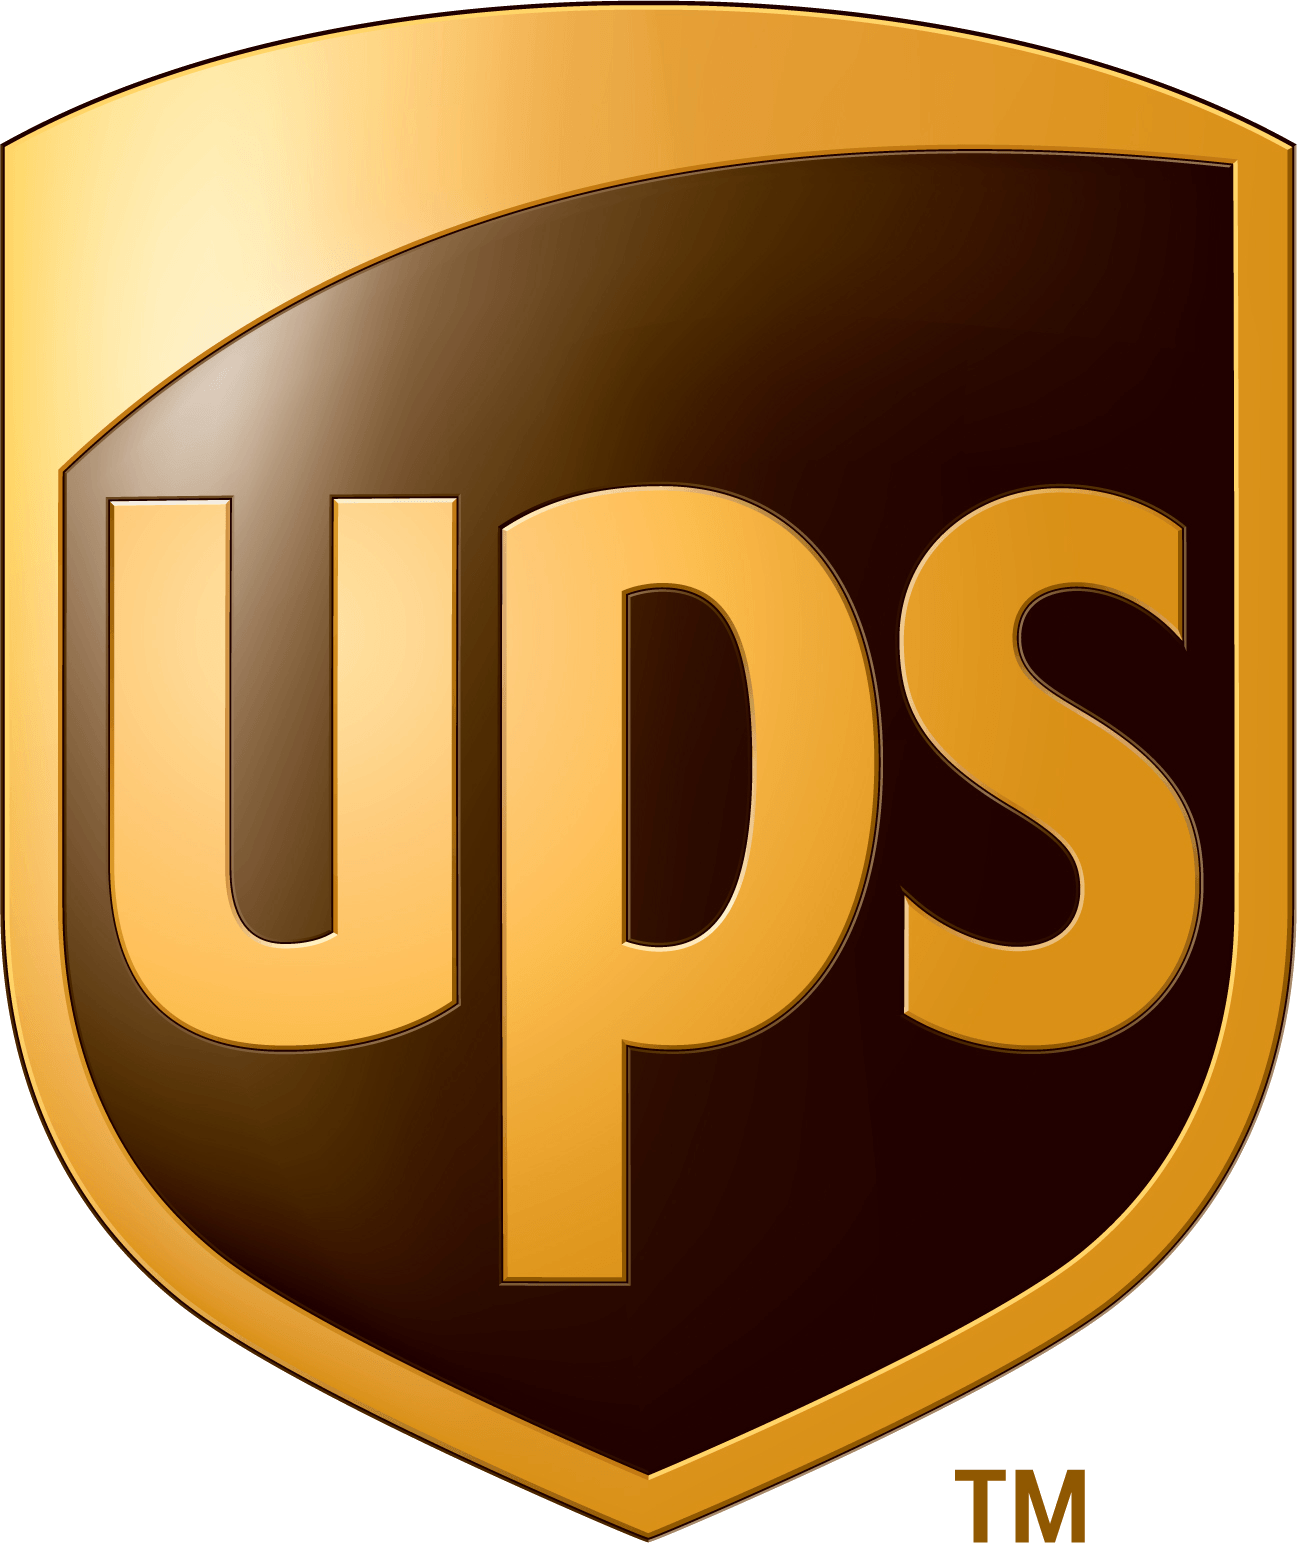 Square Transparent Logo - UPS Logo PNG Transparent Background Download - DiyLogoDesigns